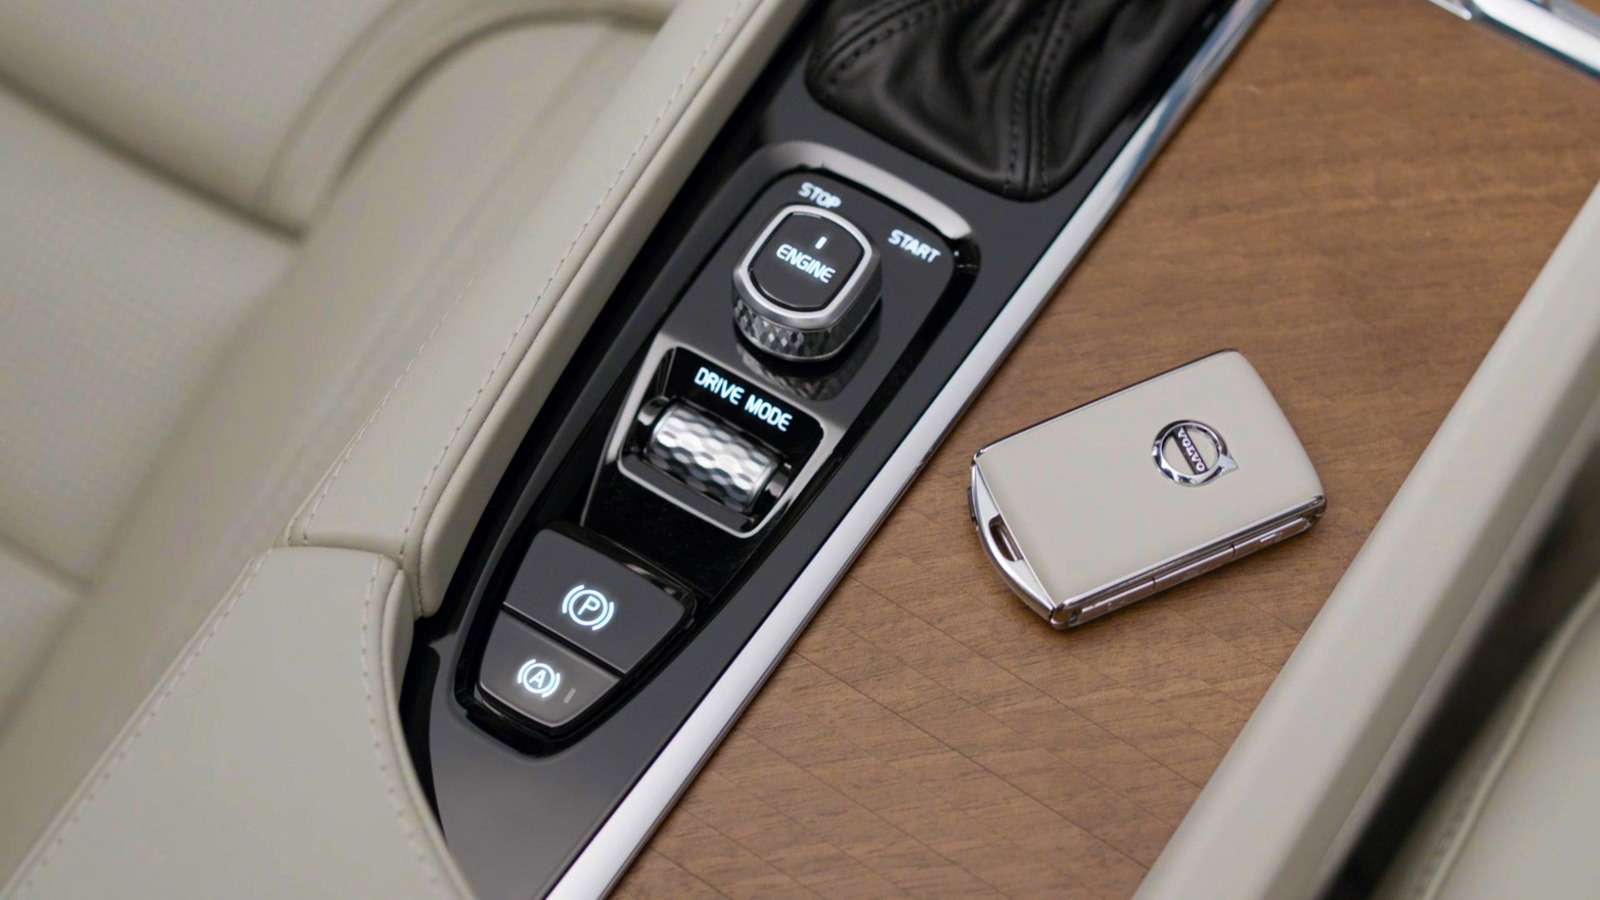 С электронного ключа можно заставить автомобиль подать звуковой сигнал или моргнуть светом, если потеряли его на парковке, а пуск двигателя происходит с помощью джойстика на центральном туннеле.